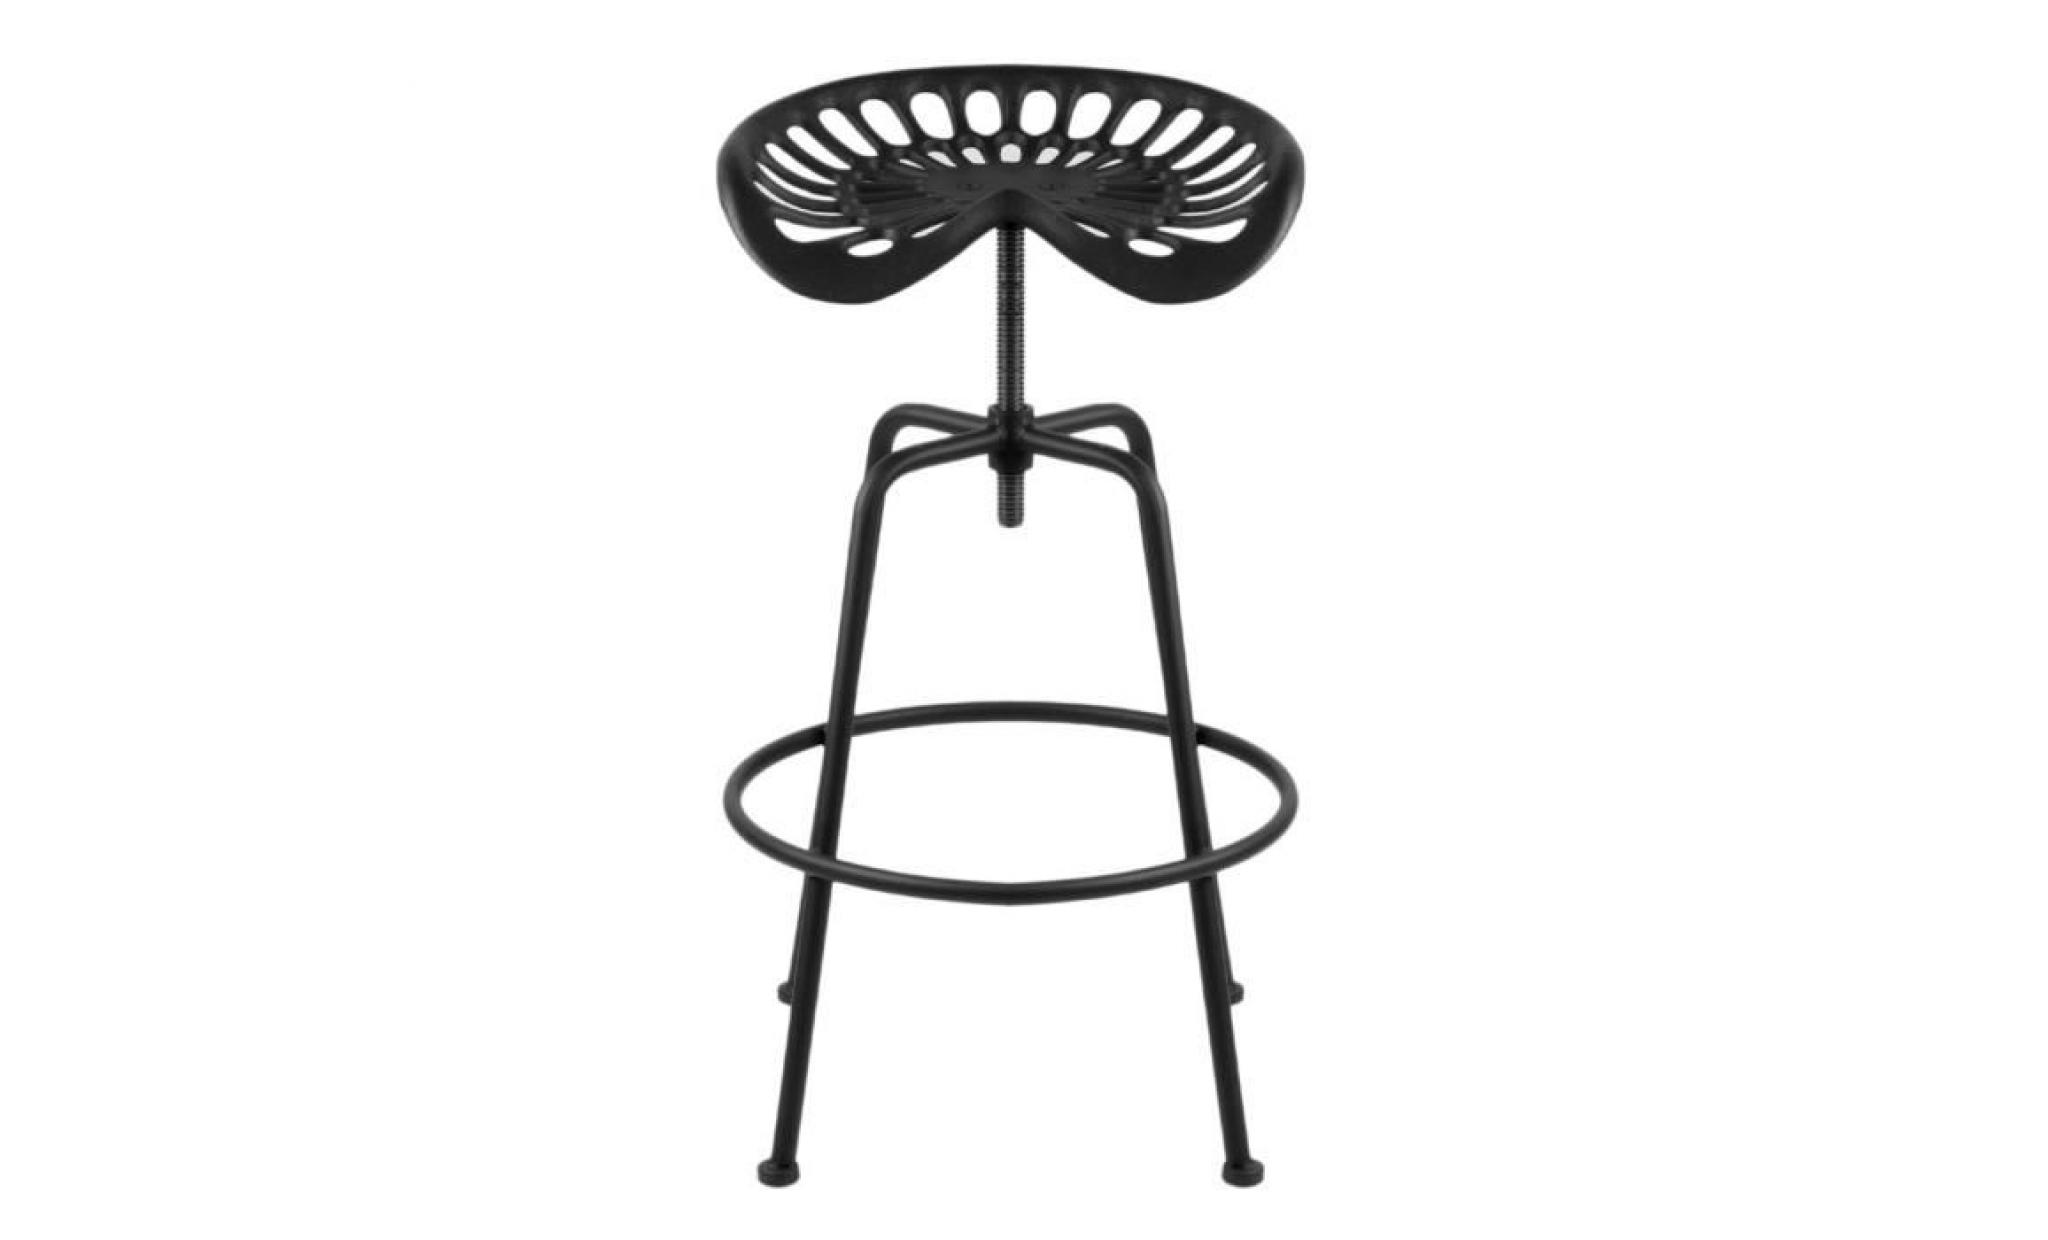 siège de tracteur tractor chaise tabouret hauteur réglable design industriel bar   noir